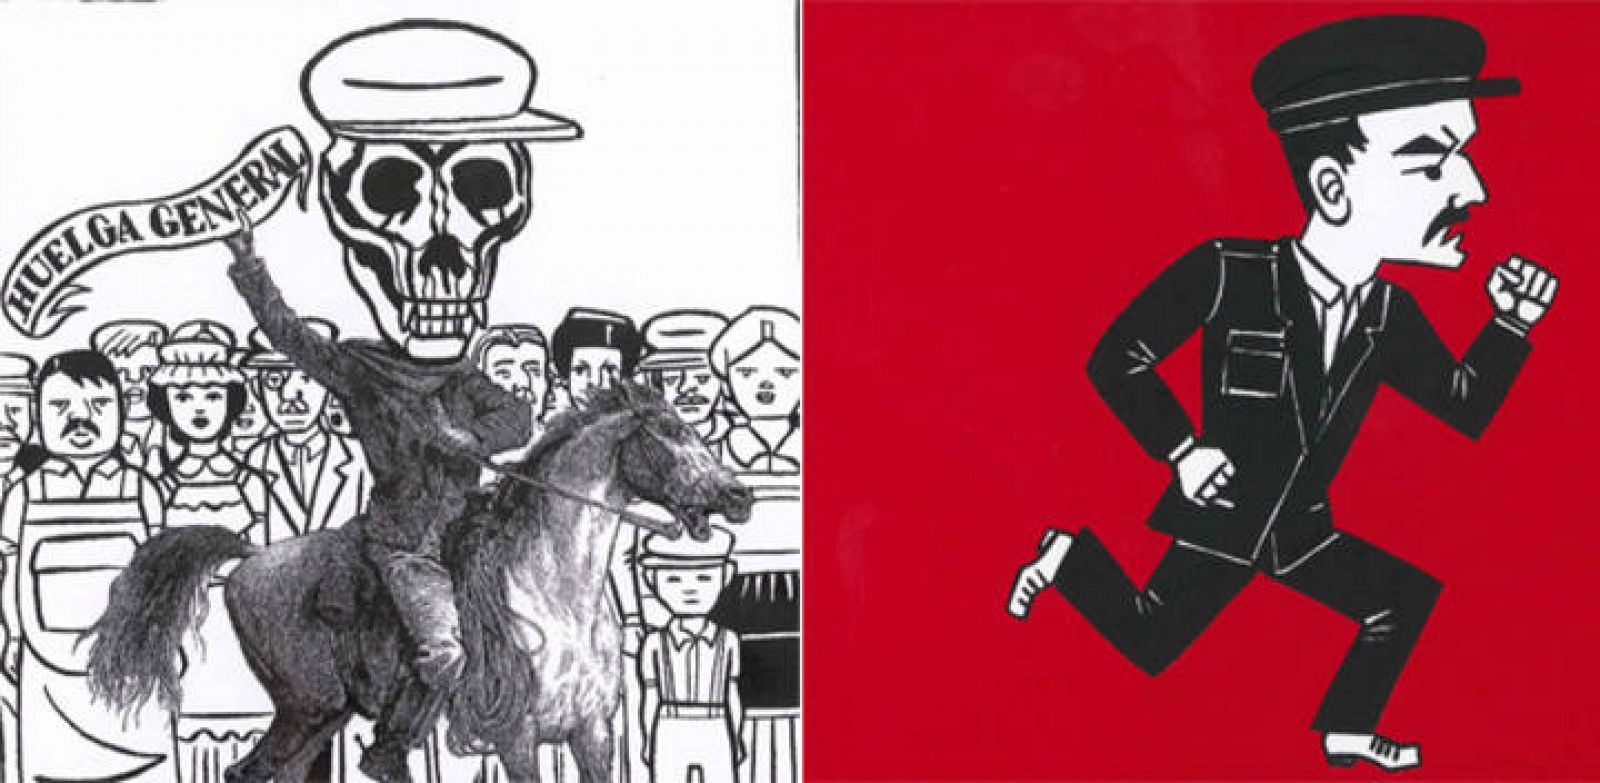  Fragmentos de una ilustración y de la portada de 'La huelga', de Jack London y Laura Pérez Vernetti 